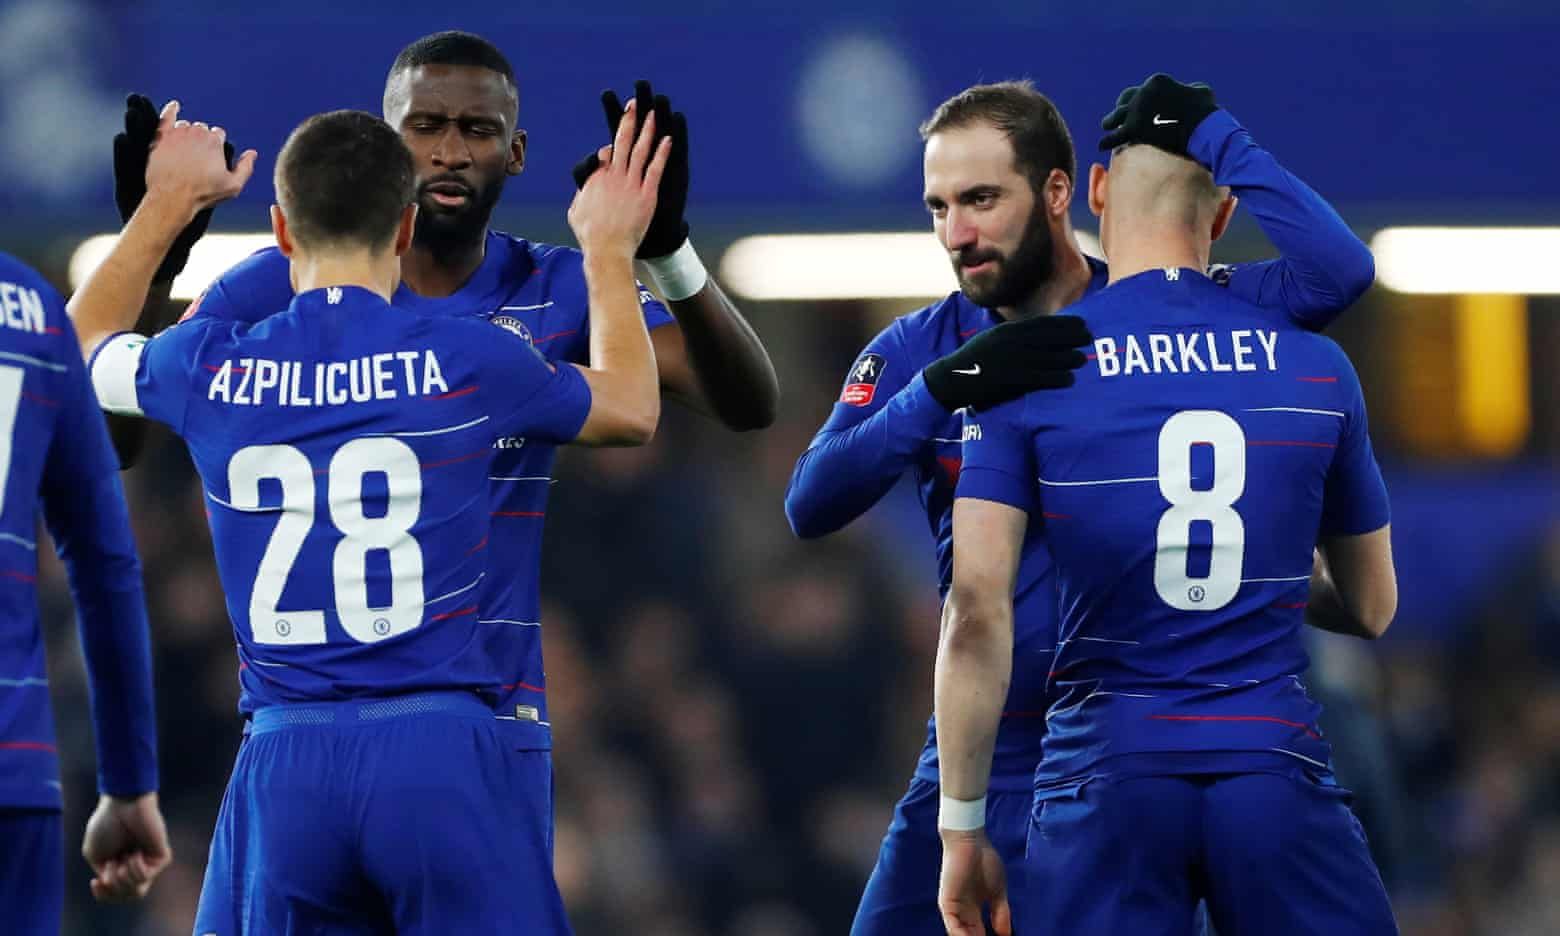 VIDEO - Chelsea écrase Huddersfield avec un doublé de Higuain et Hazard (résumé et buts)